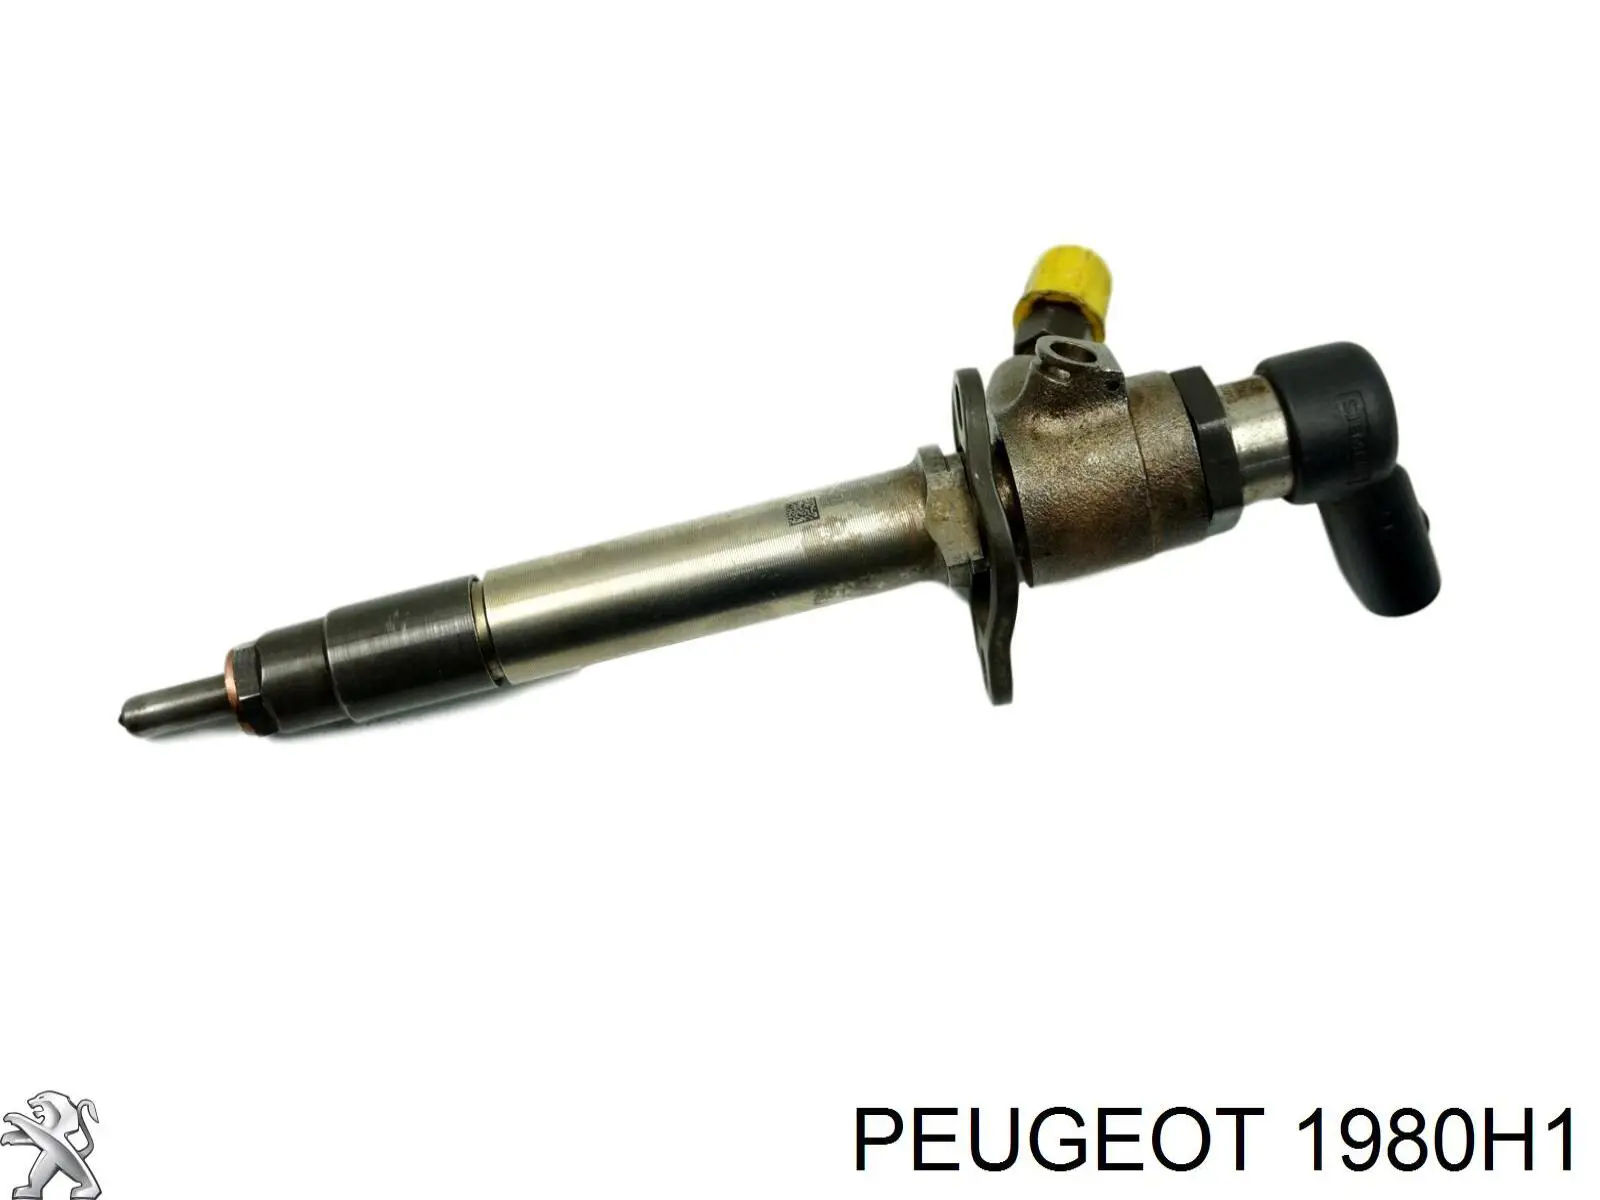 1980H1 Peugeot/Citroen injetor de injeção de combustível